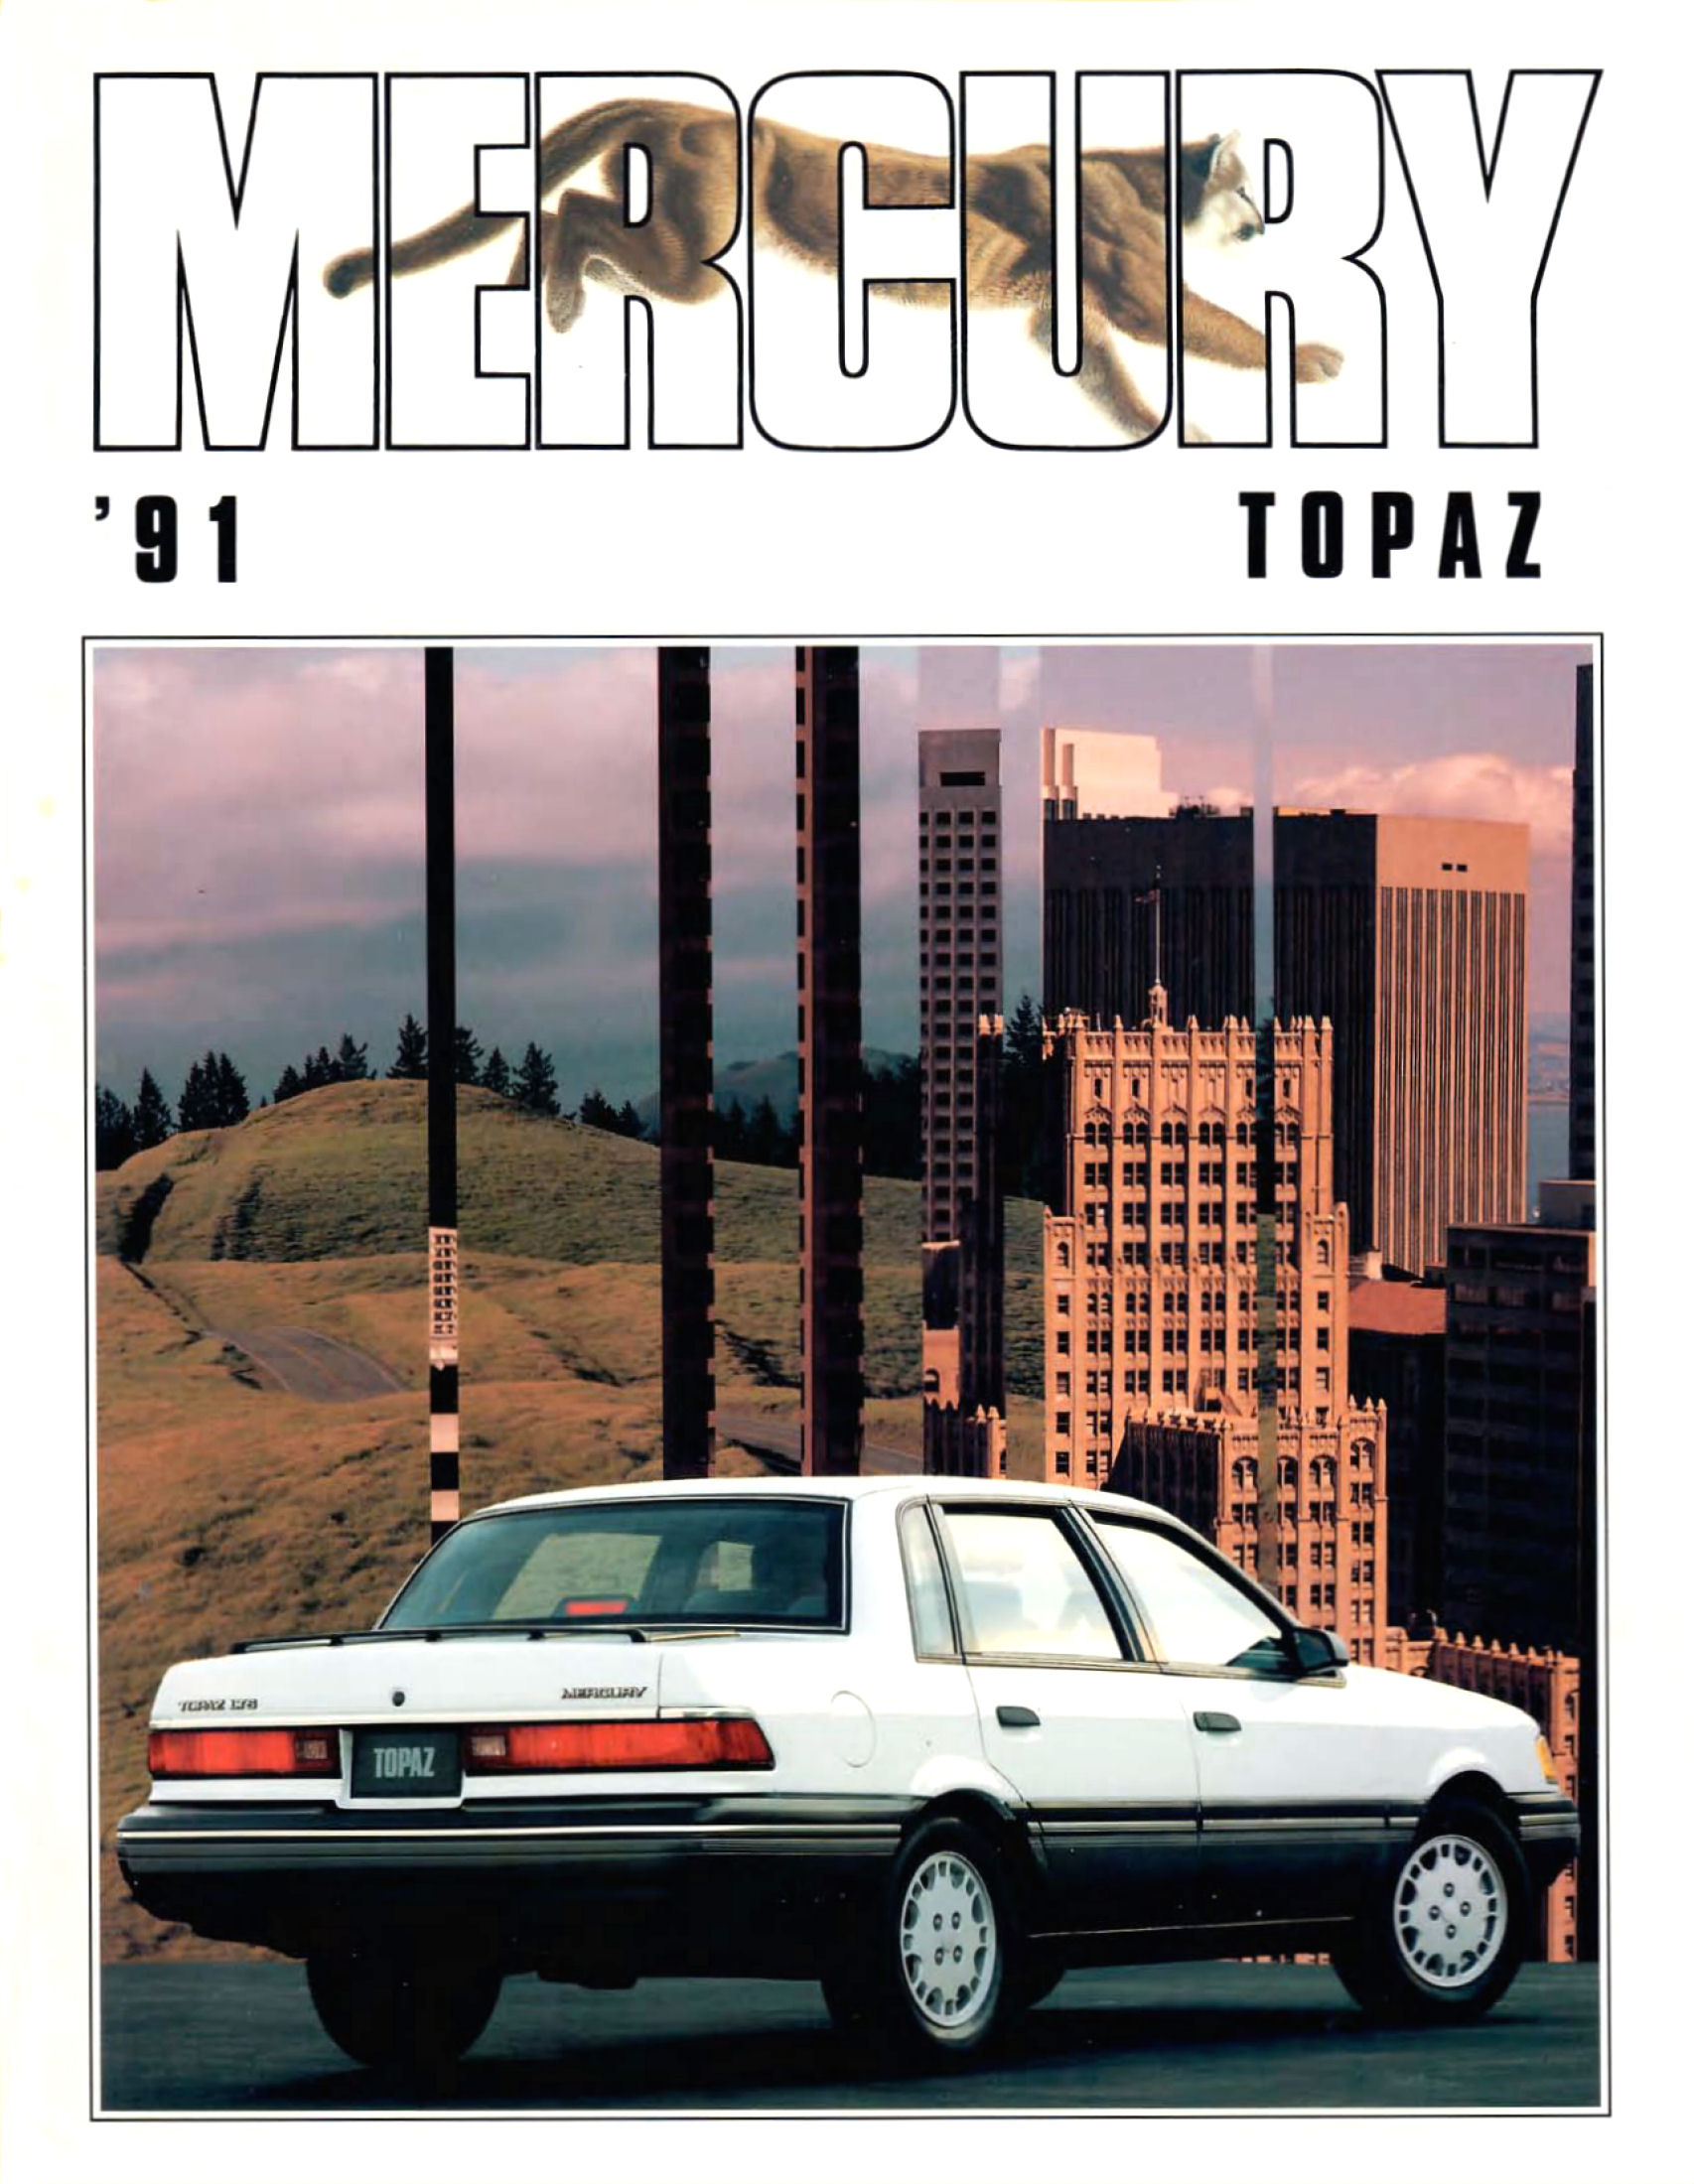 1991 Mercury Topaz-01